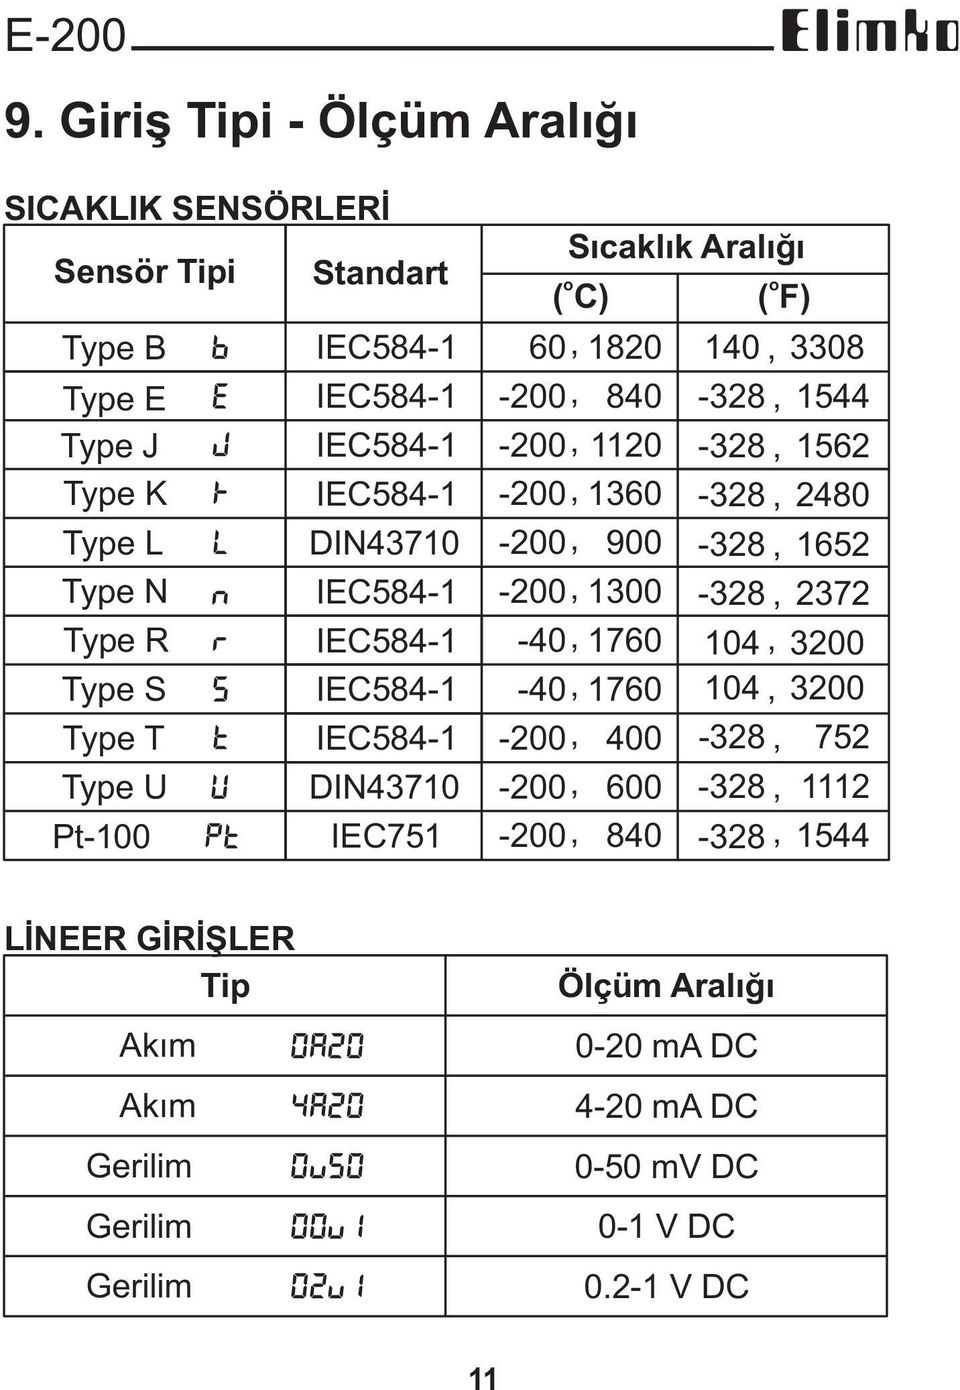 DIN4371 Type N N IEC584-1 Type R R IEC584-1 Type S S IEC584-1 Type T T IEC584-1 Type U U DIN4371 Pt-1 Pt IEC751 Sýcaklýk Aralýðý o o (C) (F) 6, 182